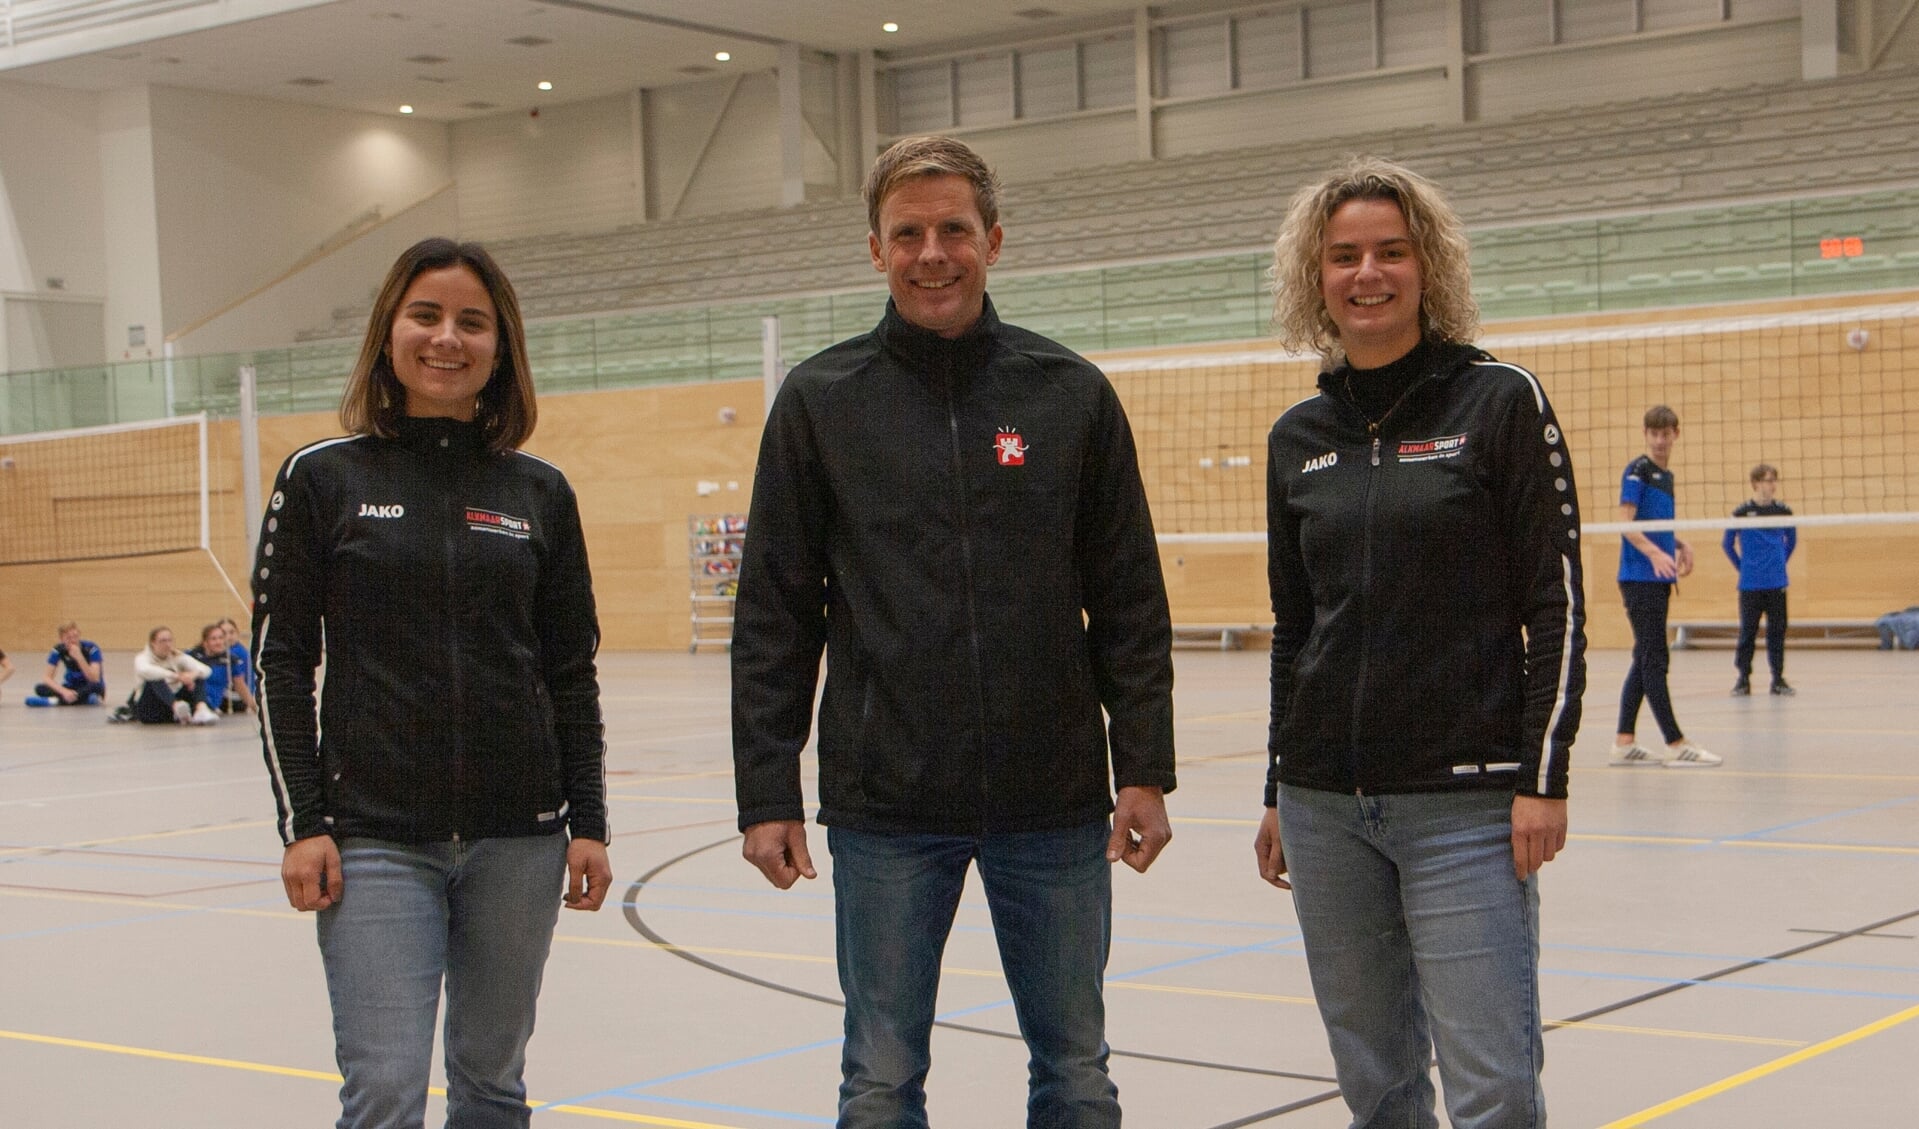 Alle vragen over sport in Alkmaar kunnen inwoners stellen aan Thyrvi, Yuri en Britt.